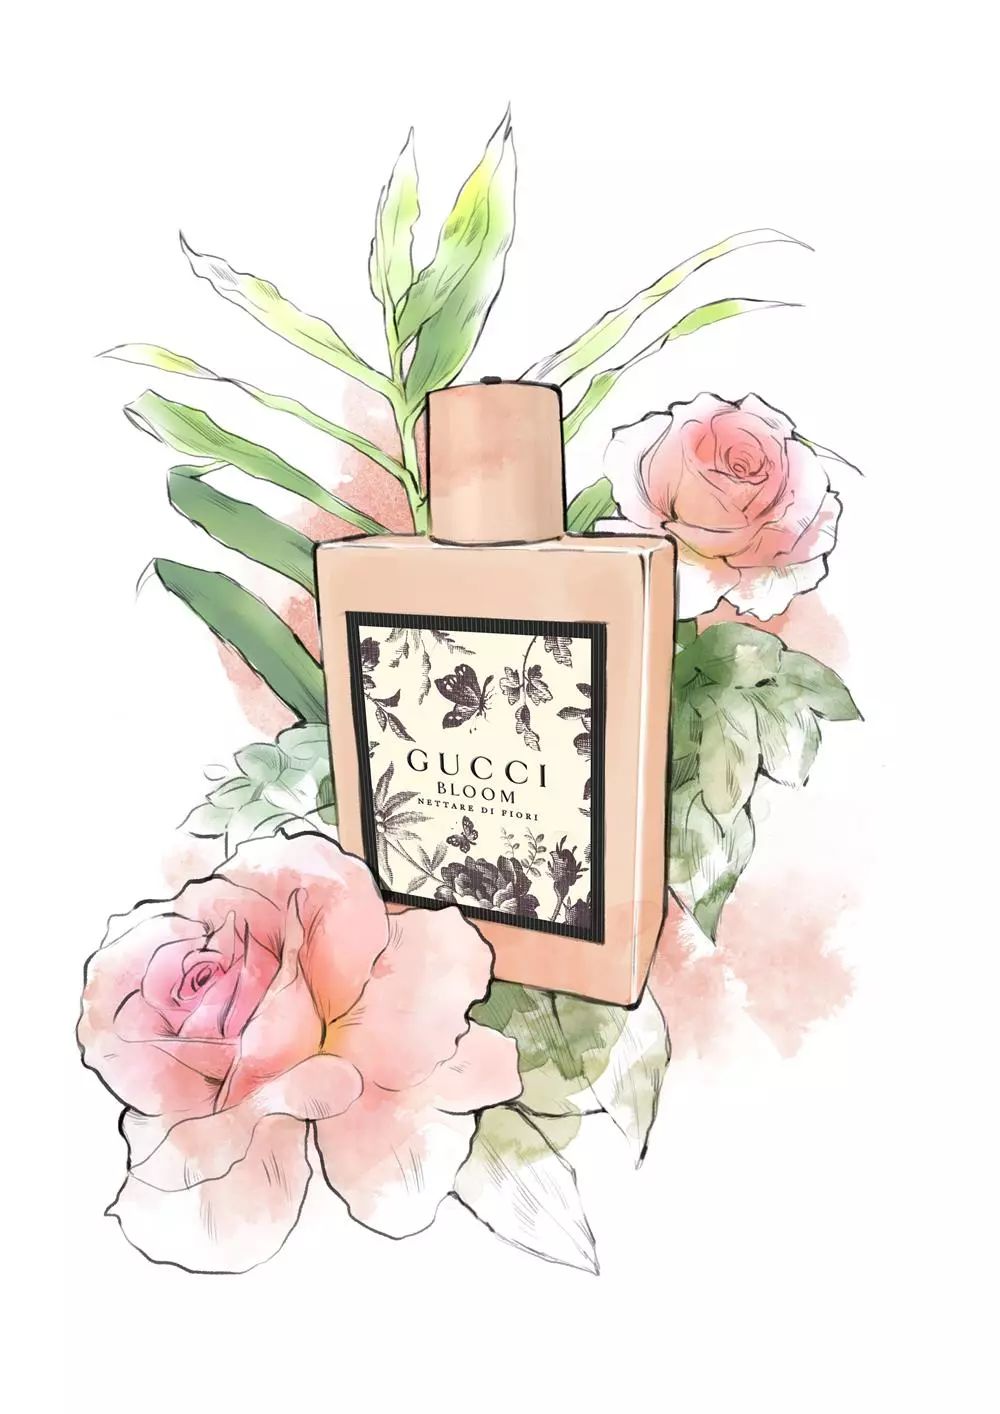 Gucci bloom古驰花悦绽放系列香水，让人有一种置身于花园的感觉